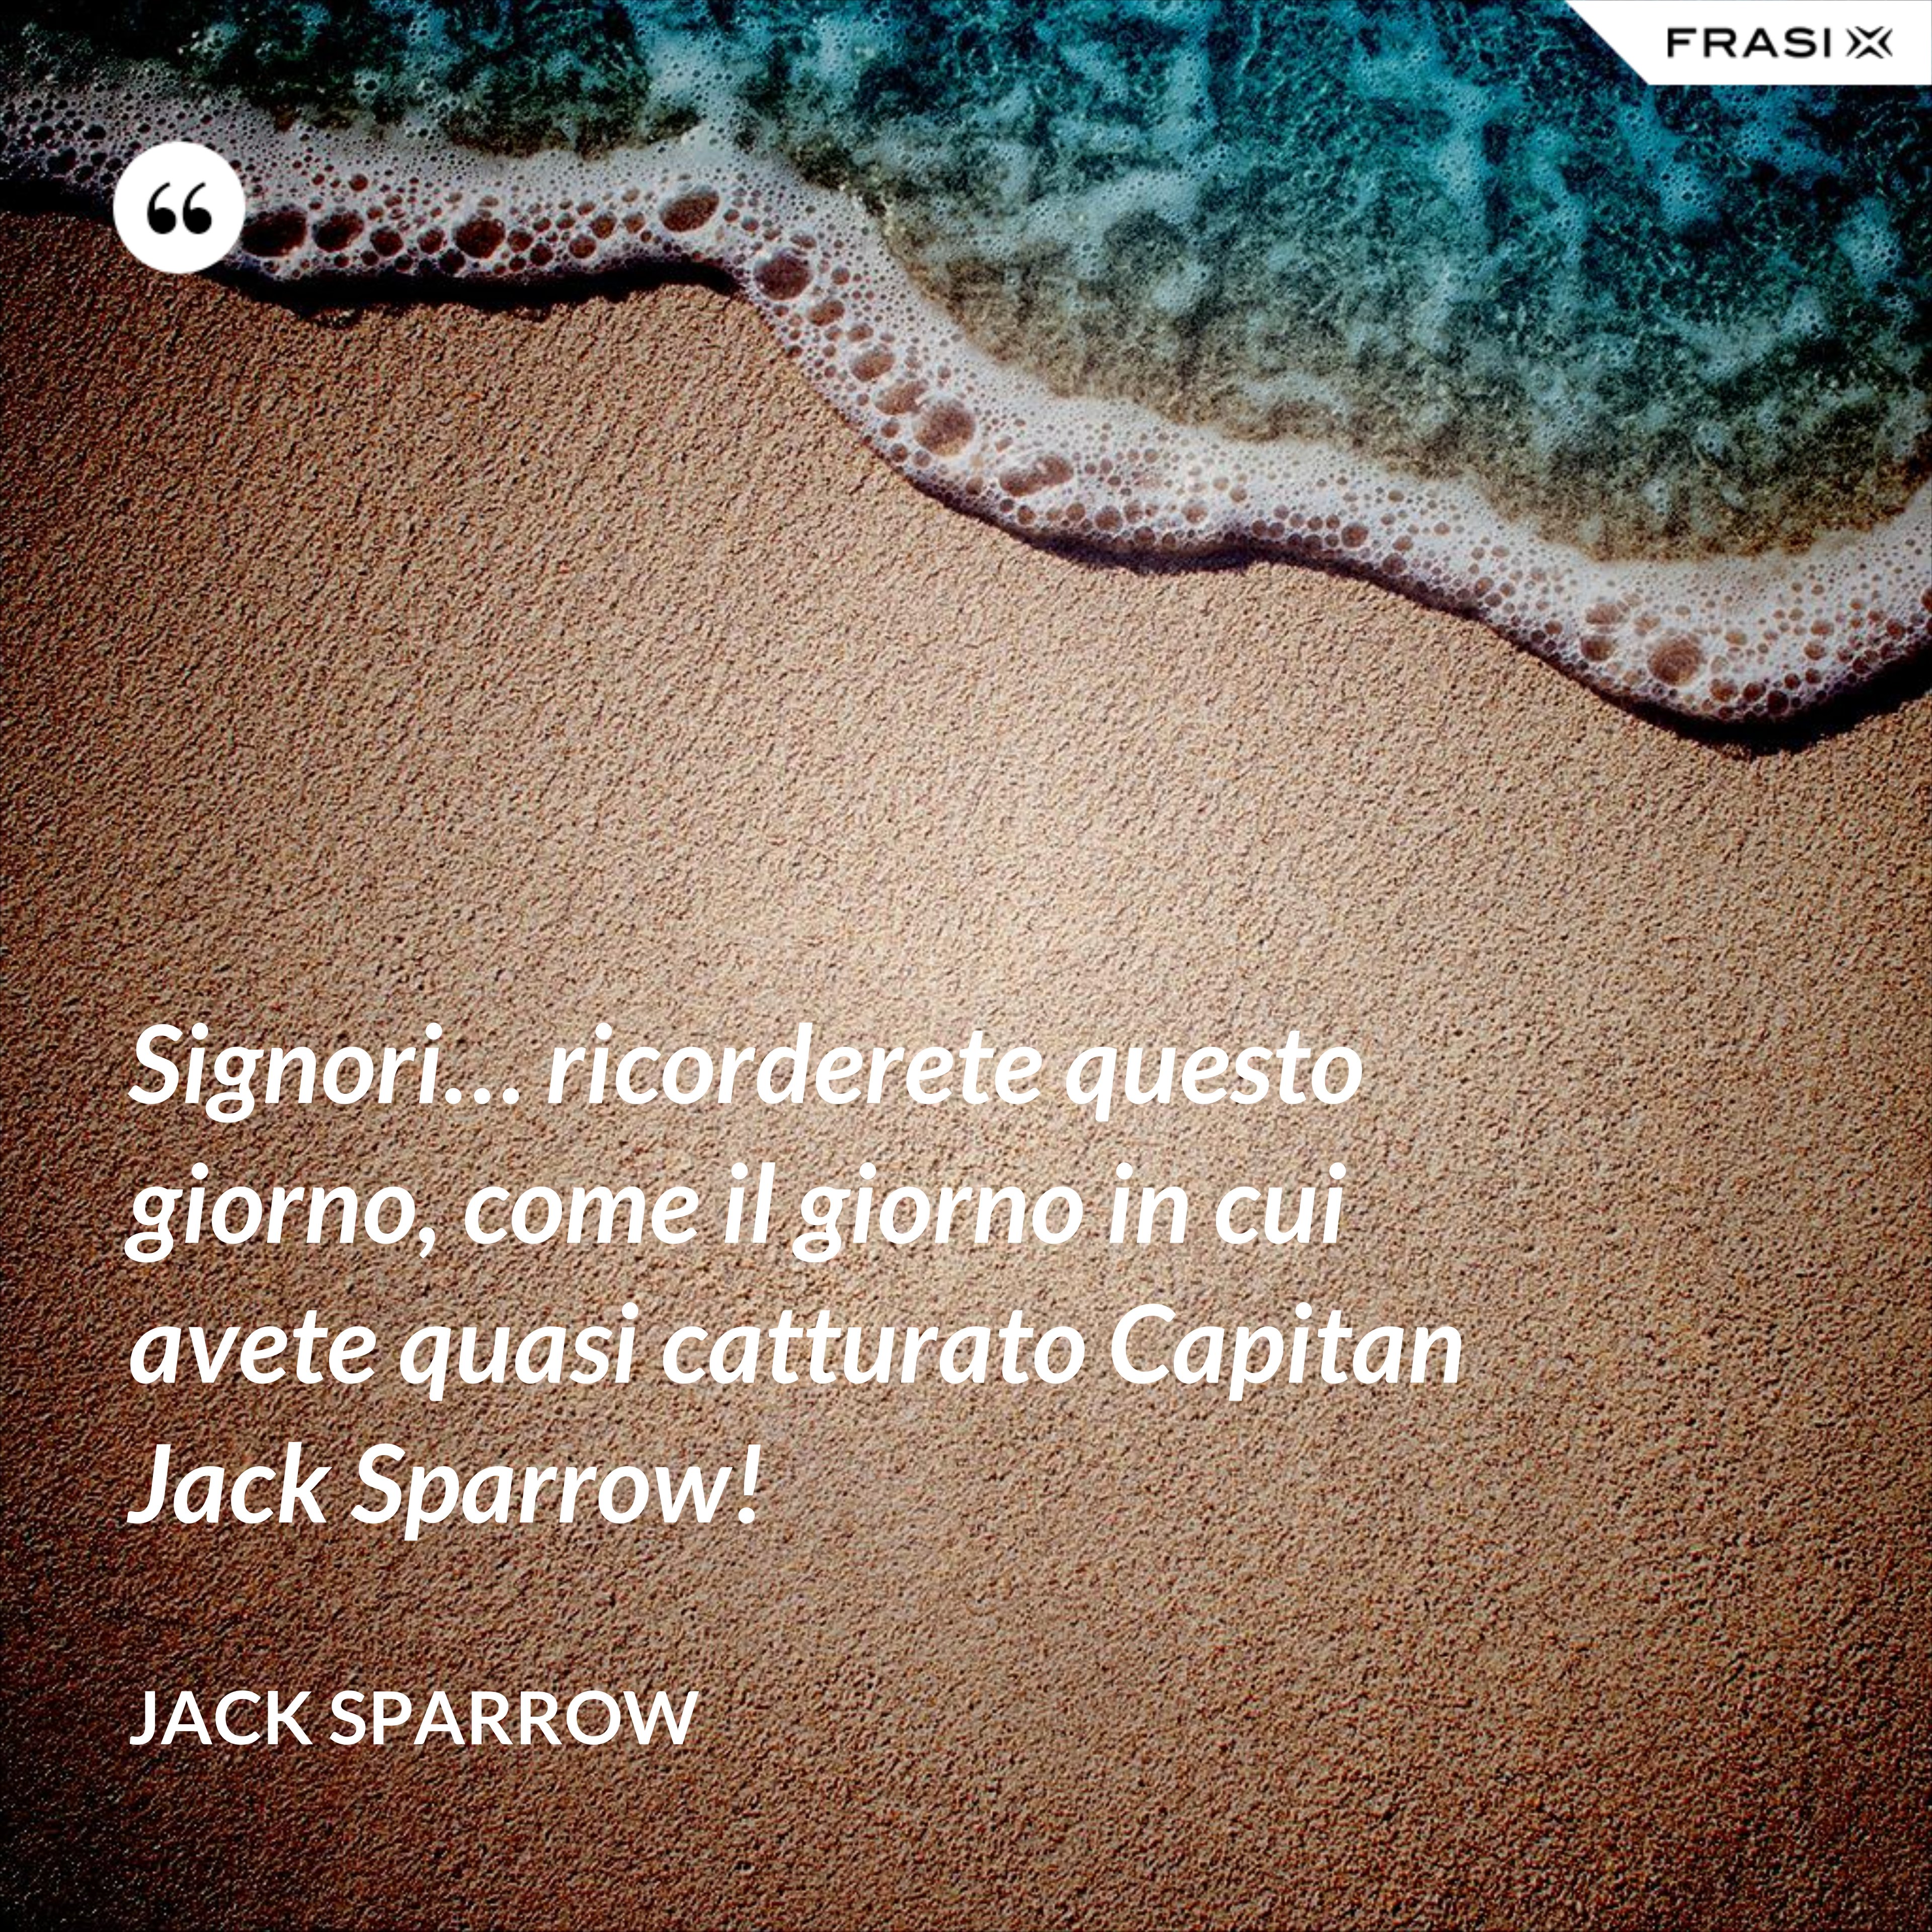 Signori… ricorderete questo giorno, come il giorno in cui avete quasi catturato Capitan Jack Sparrow! - Jack Sparrow